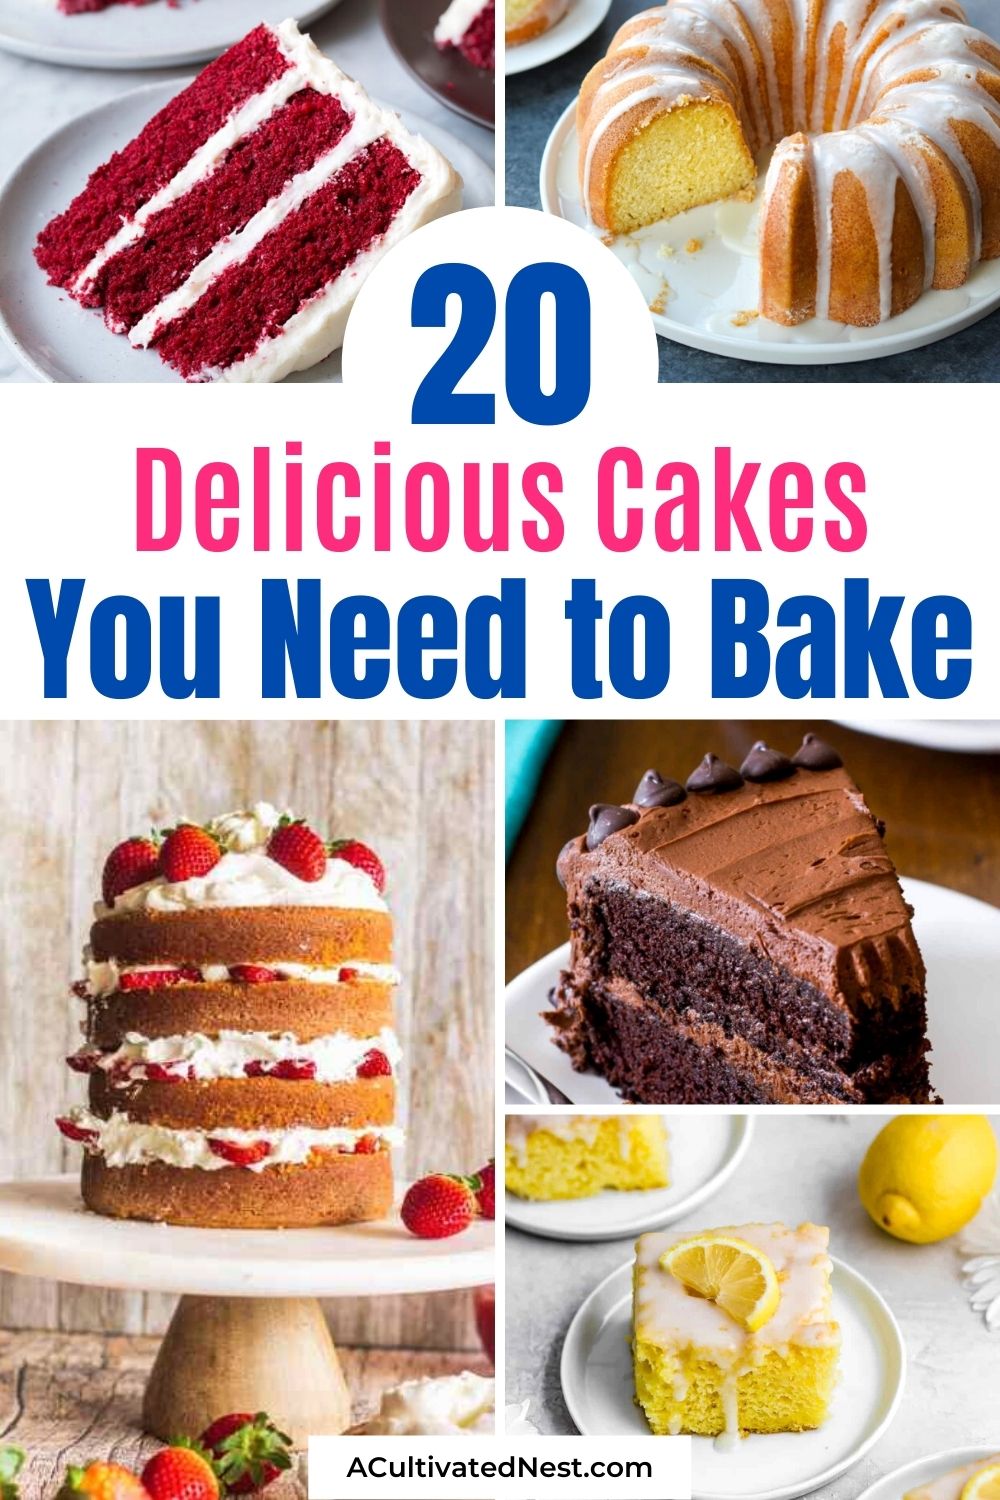 20 délicieuses recettes de gâteaux que vous devez préparer 